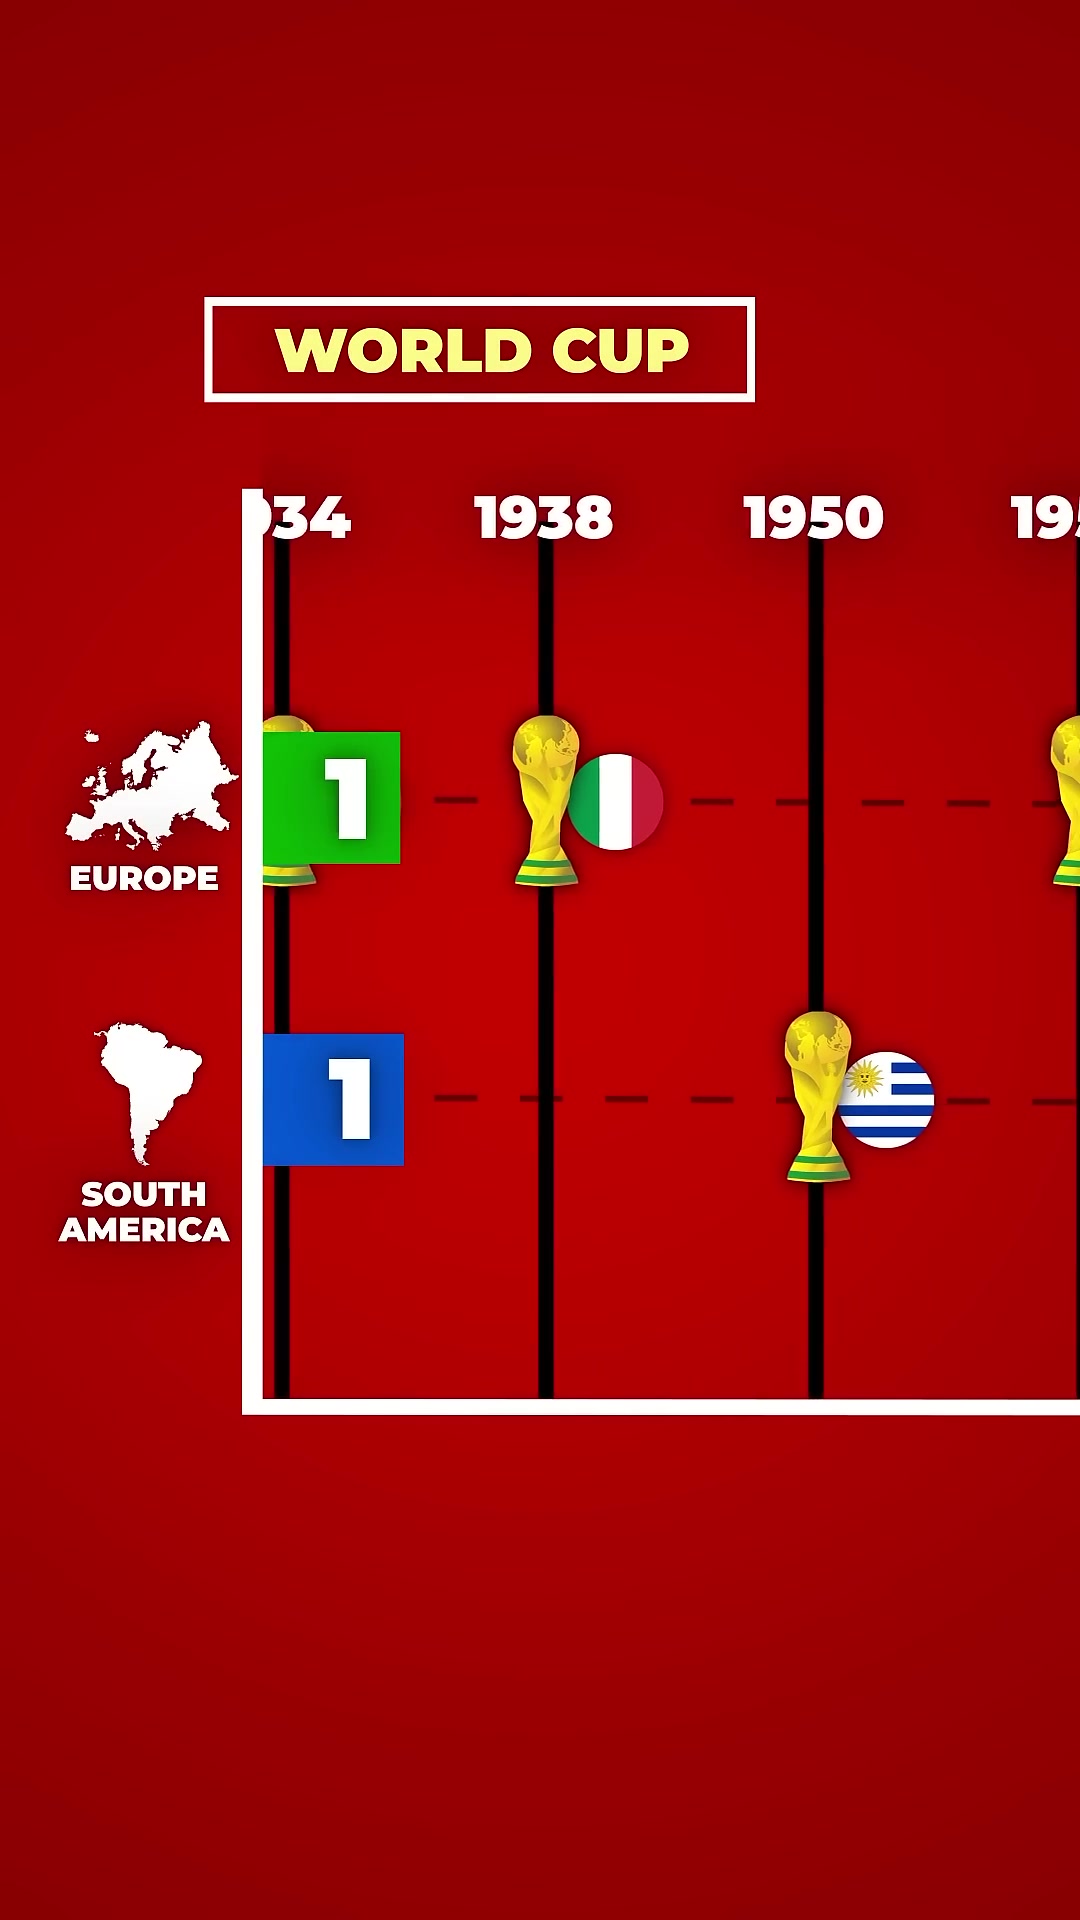 欧洲vs南美洲，两大洲的世界杯夺冠